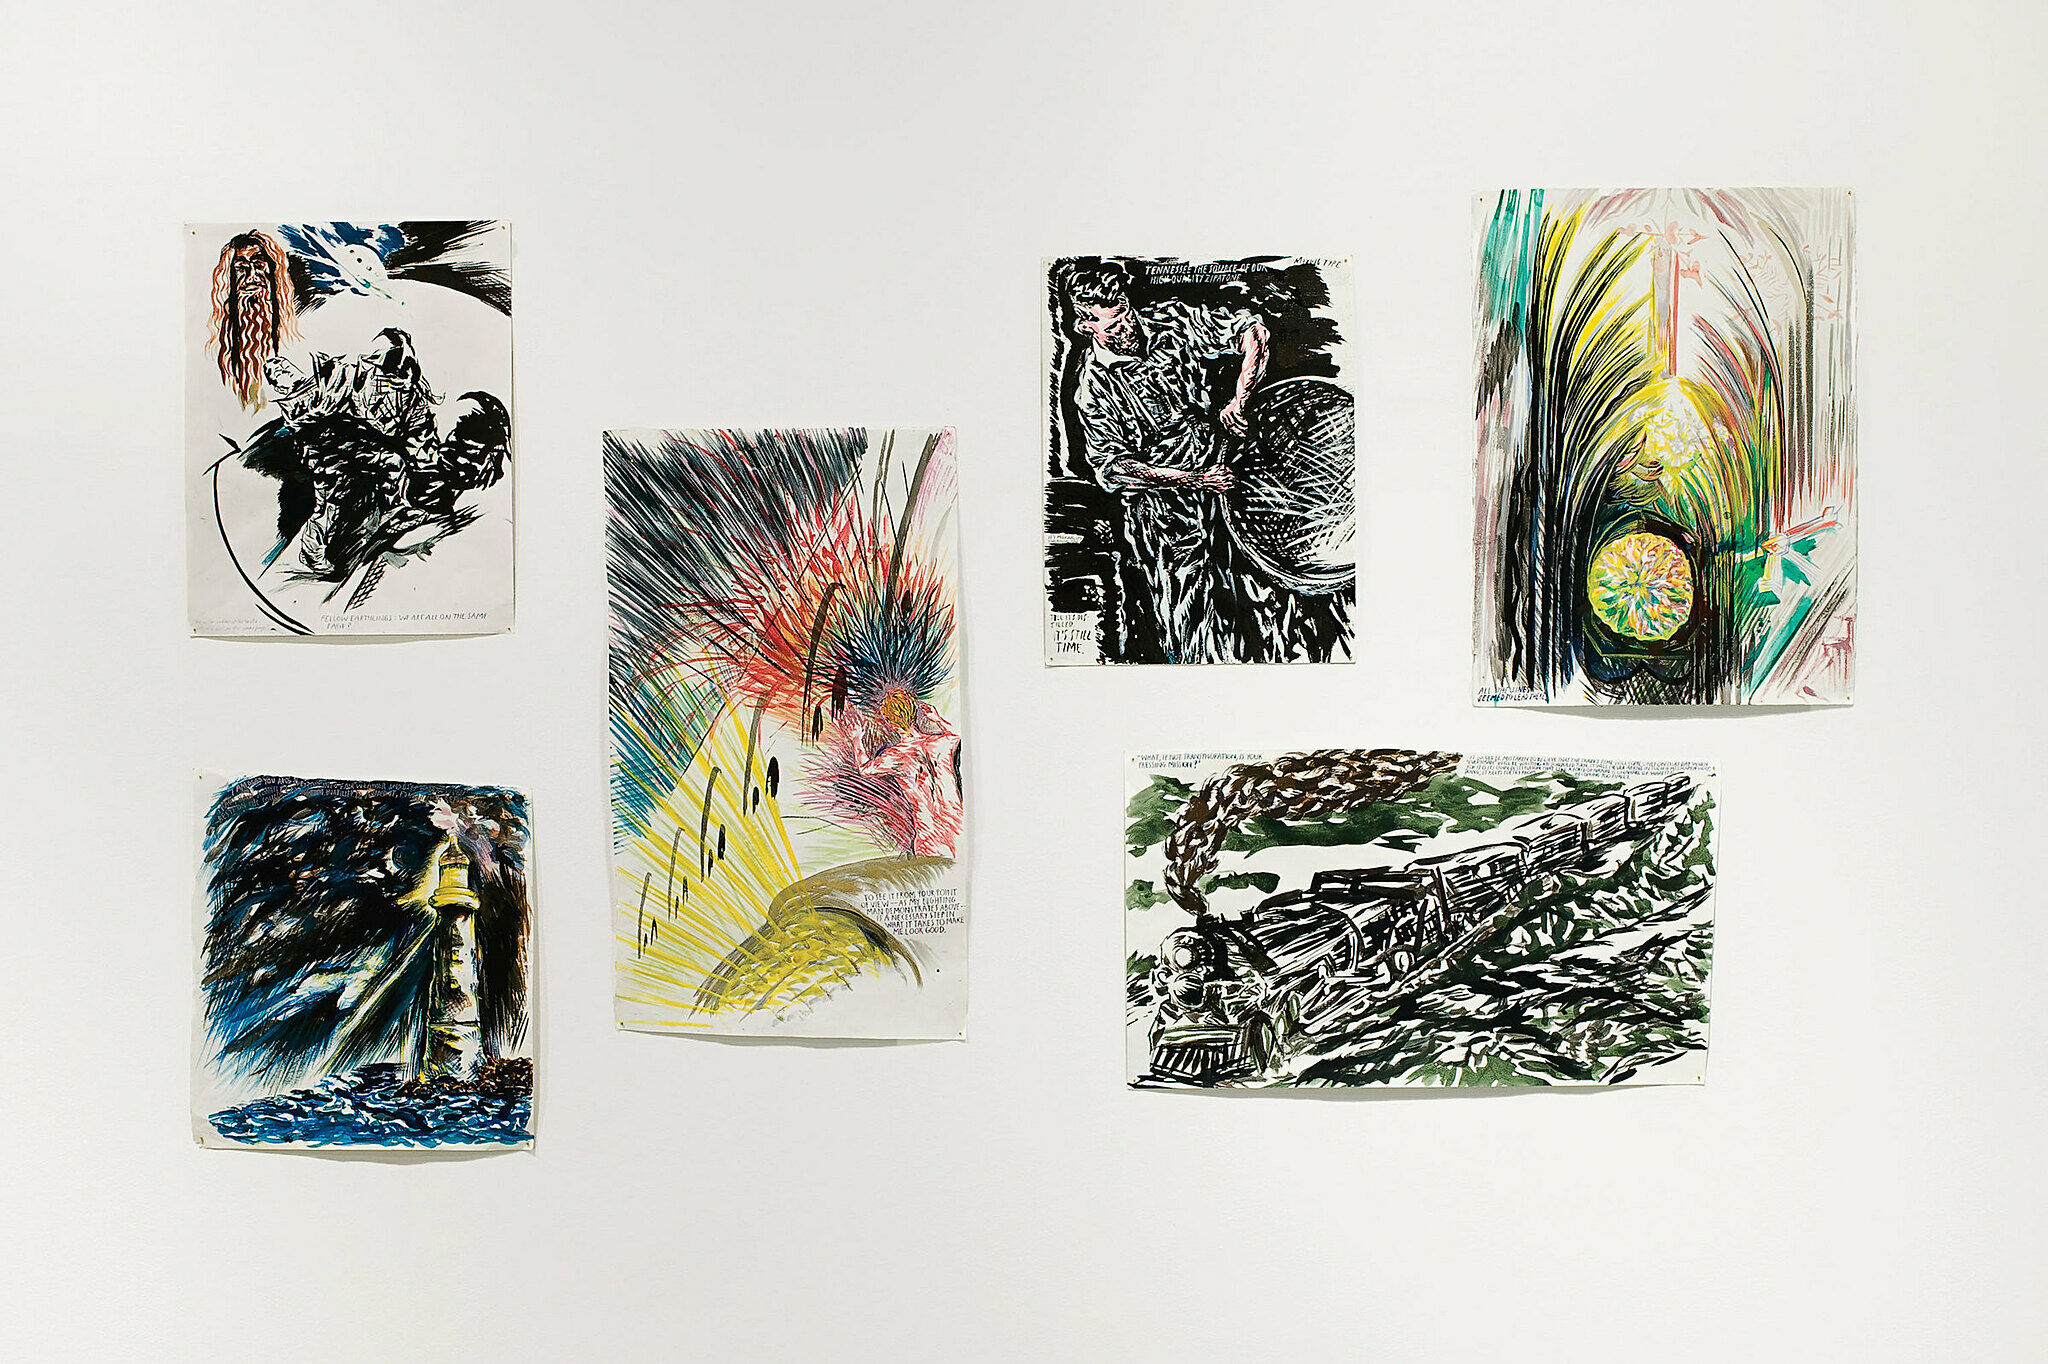 Six prints by Raymond Pettibon